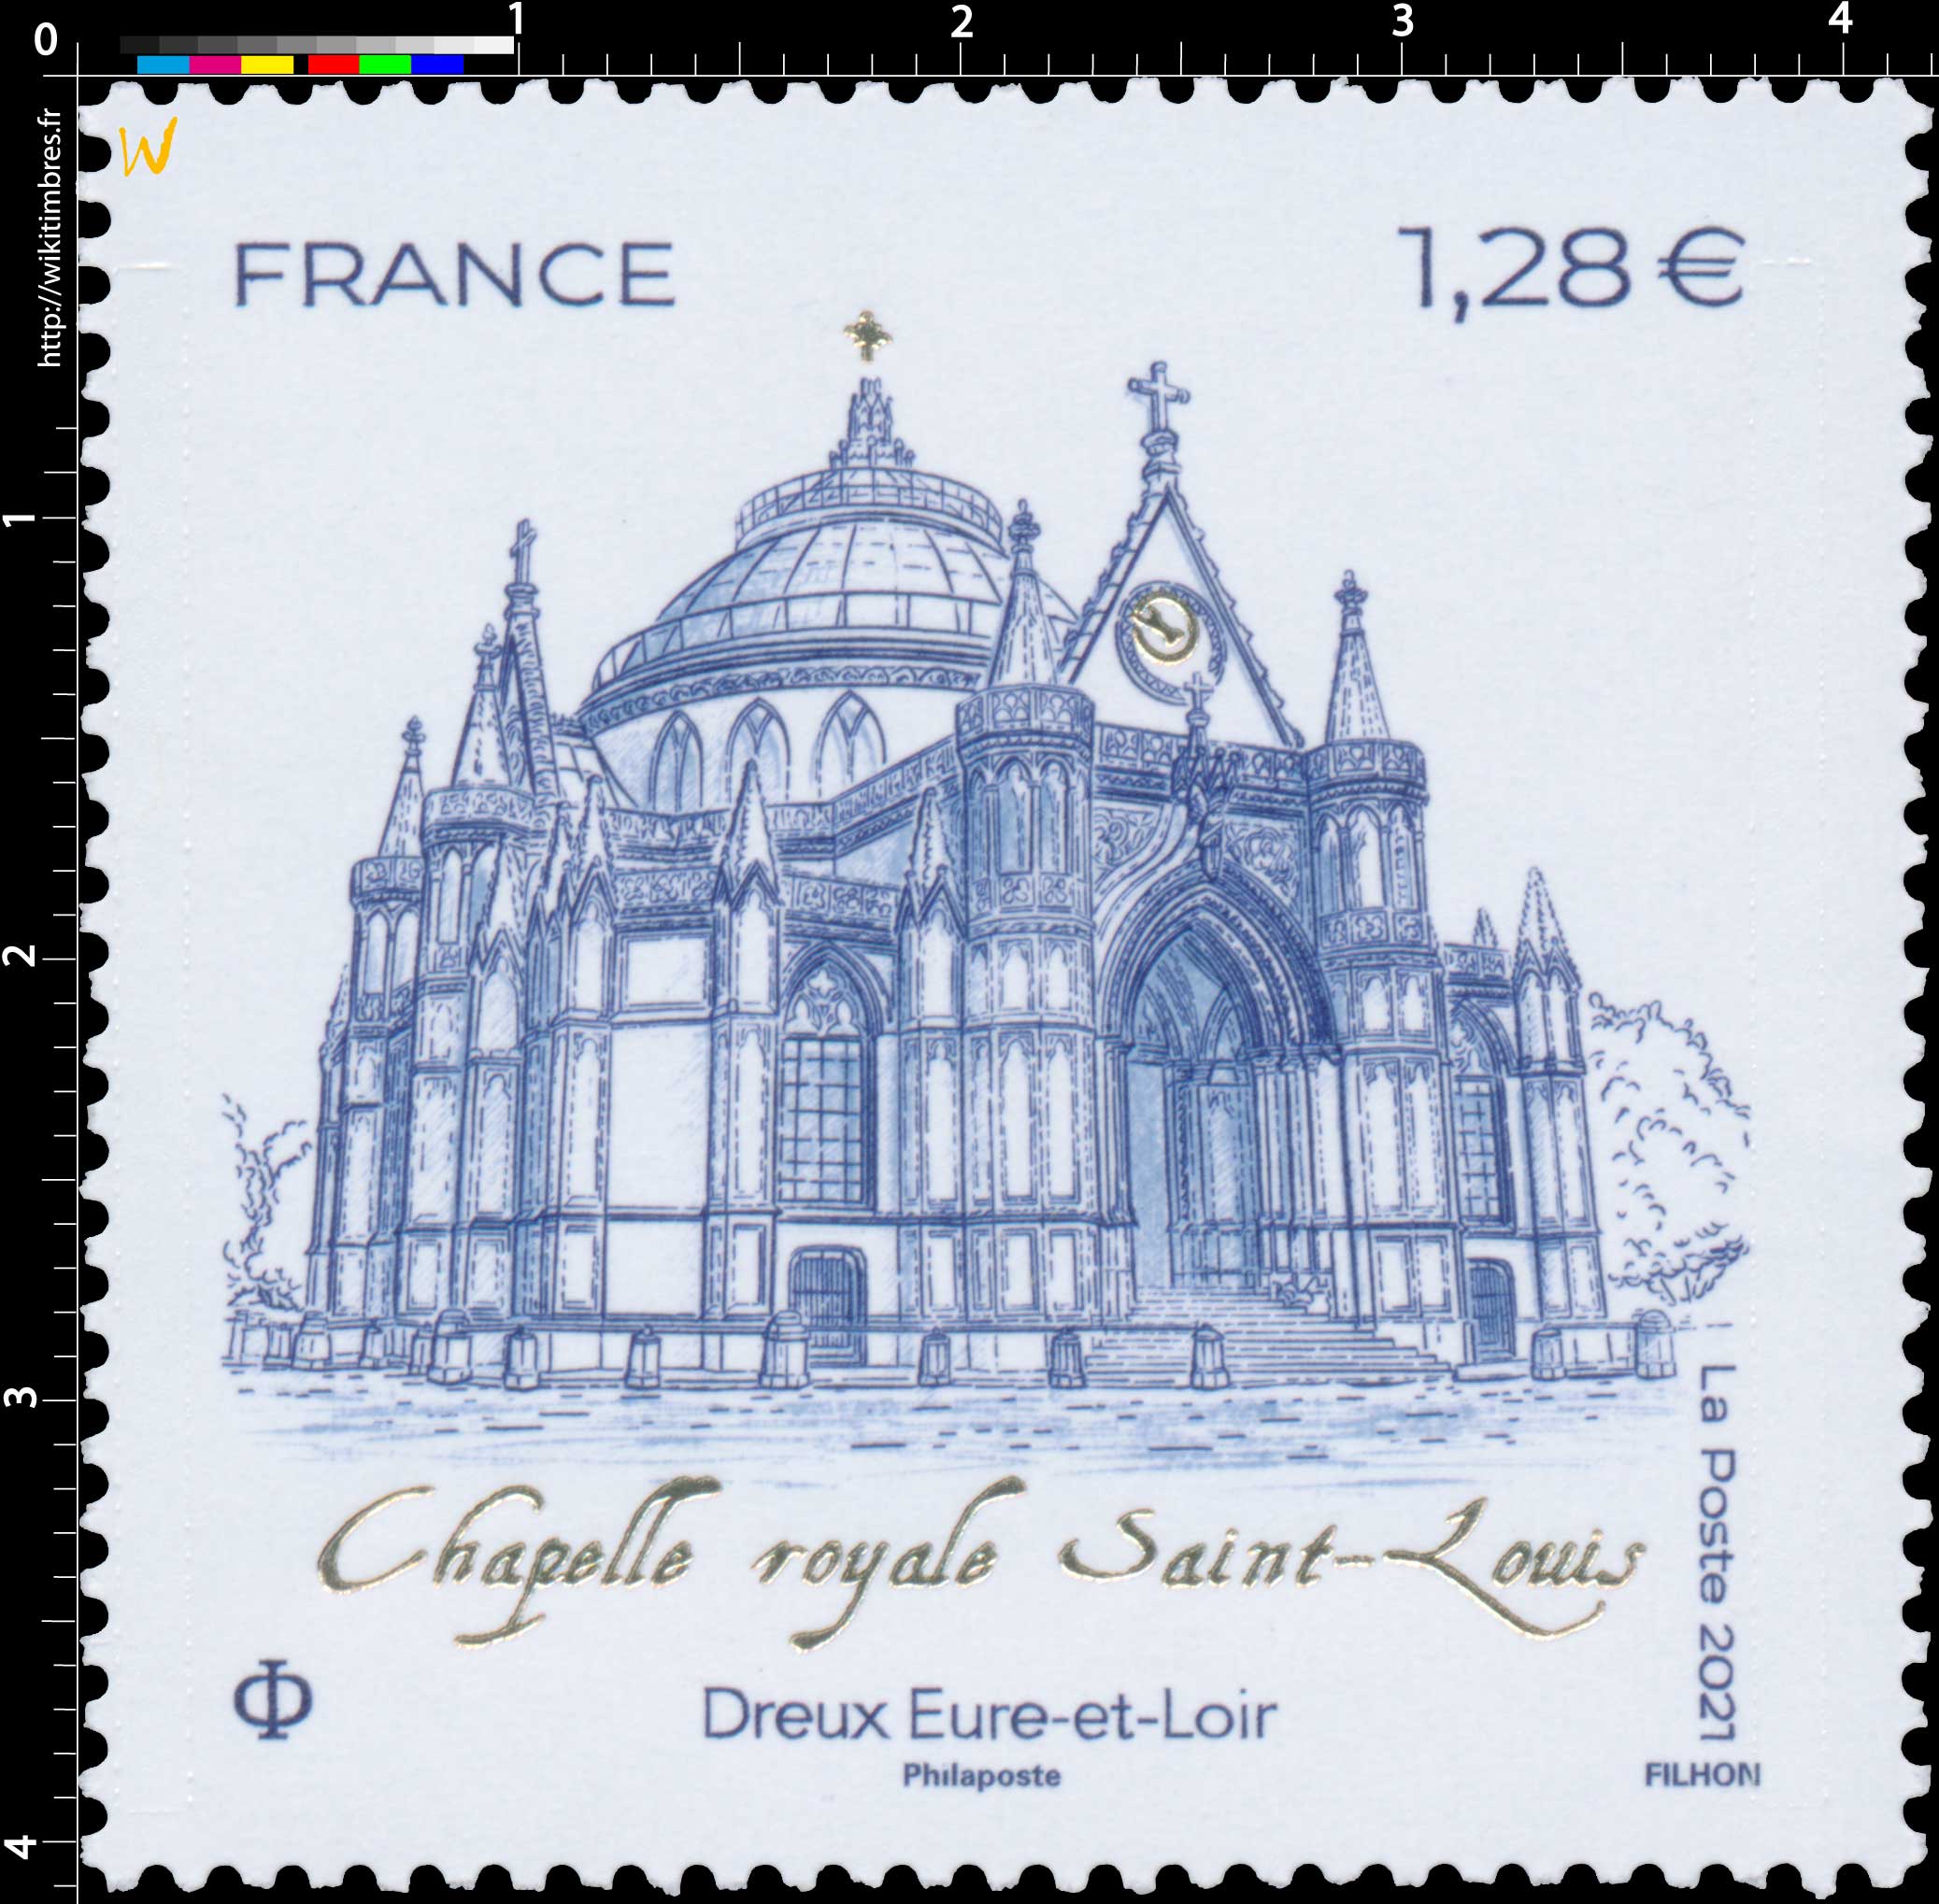 2021 Chapelle royale Saint-Louis - Dreux Eure-et-Loir